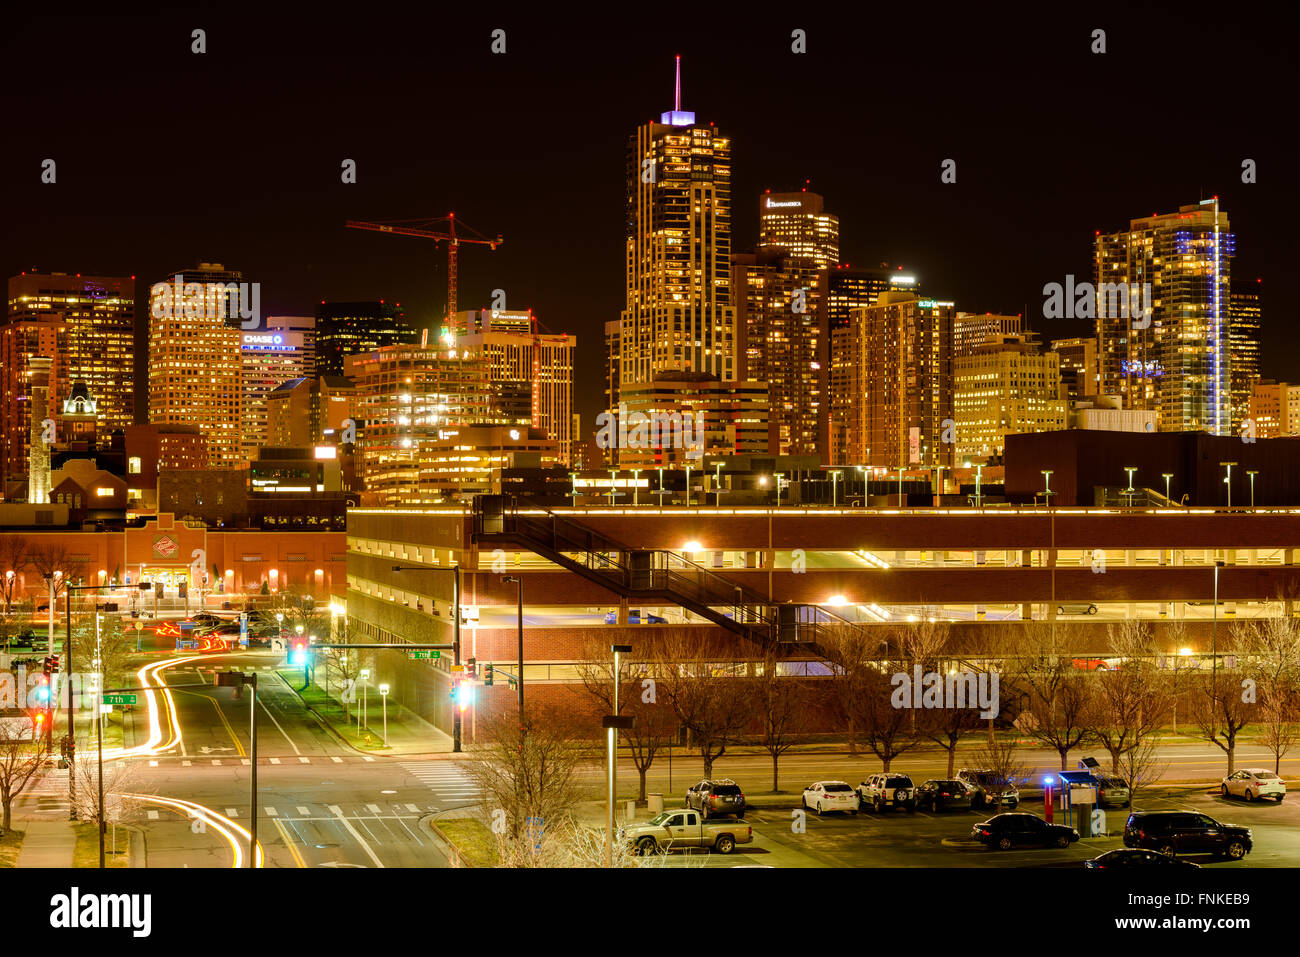 Denver, Colorado, USA - 9. Dezember 2015: Eine Nacht Blick auf glitzernde Wolkenkratzer und helle Straßen von Downtown Denver. Stockfoto